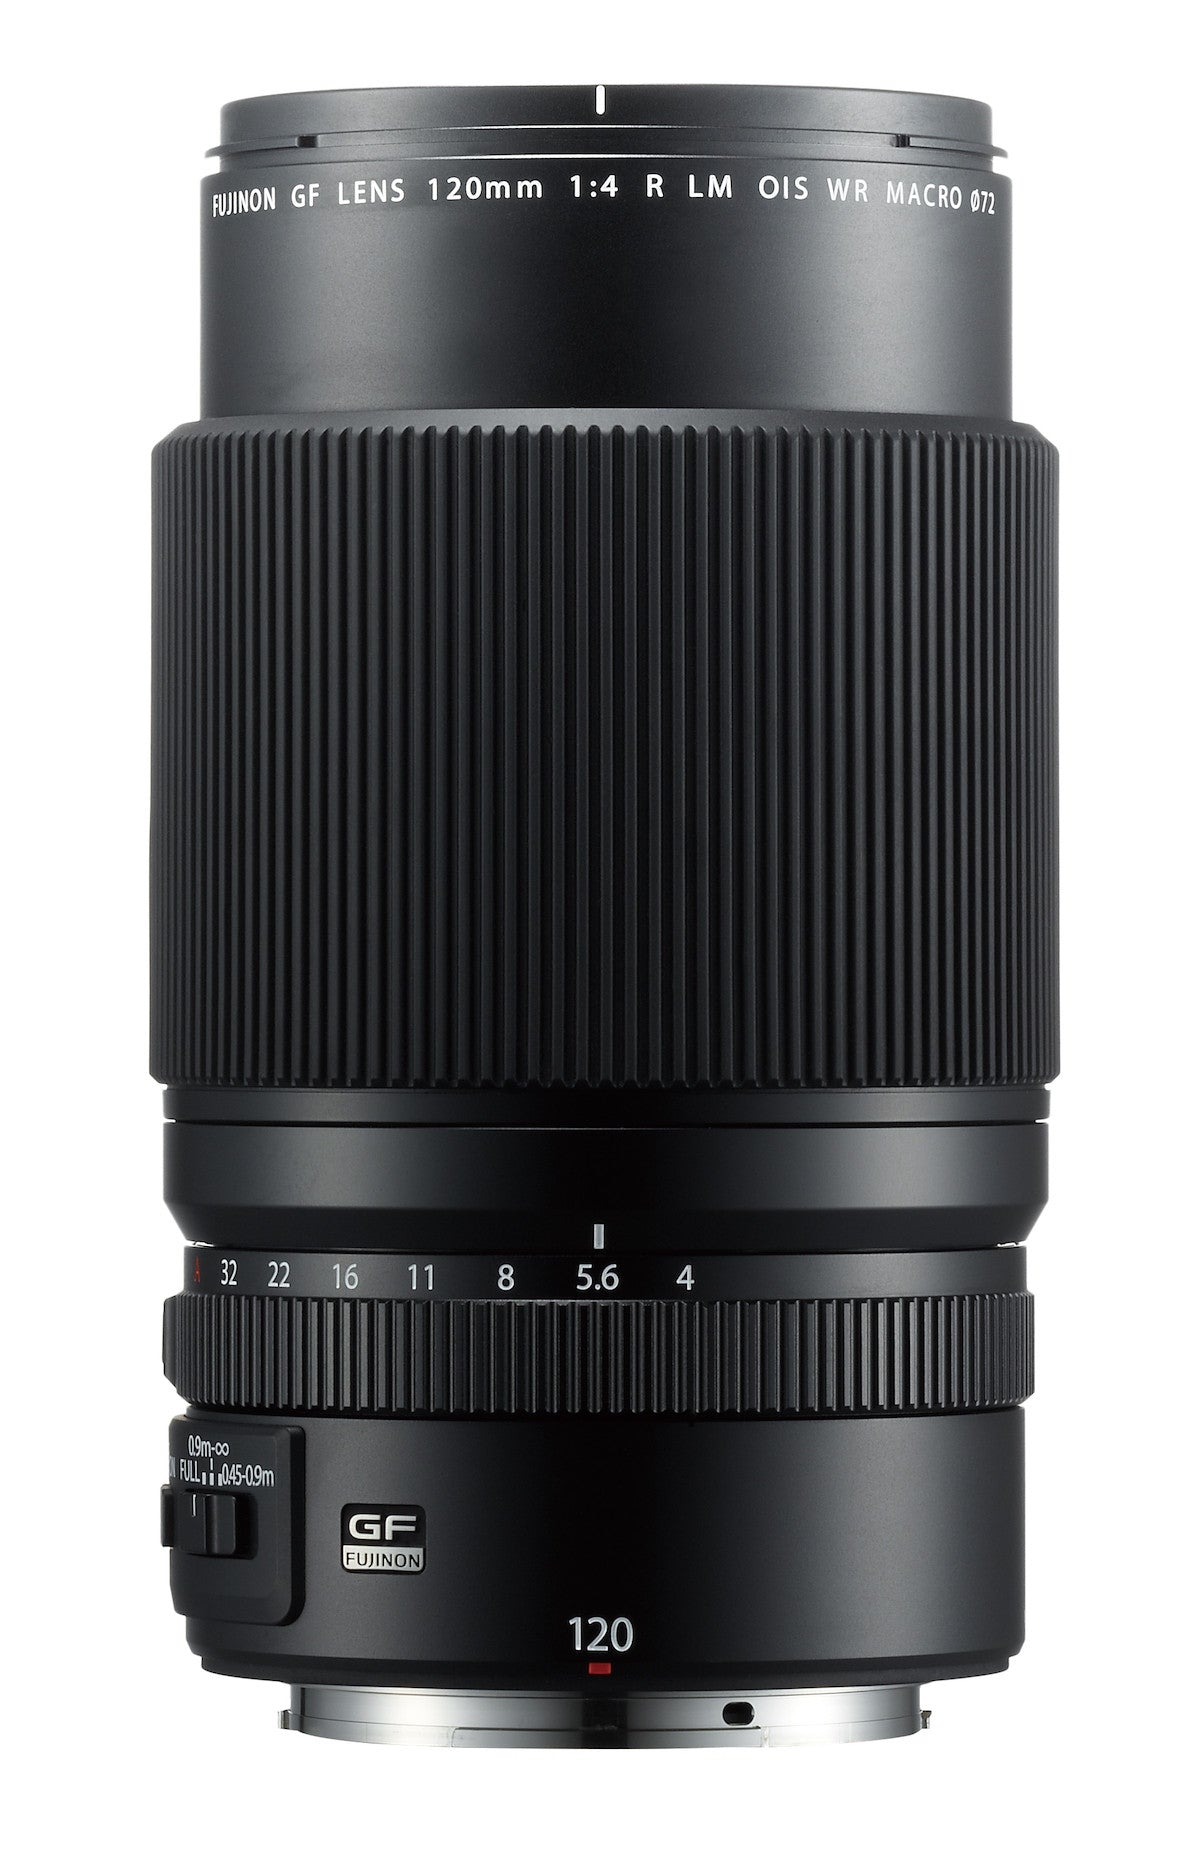 Fujifilm GF 120mm f4 R LM OIS WR Macro Lens, lenses medium format, Fujifilm - Pictureline  - 2